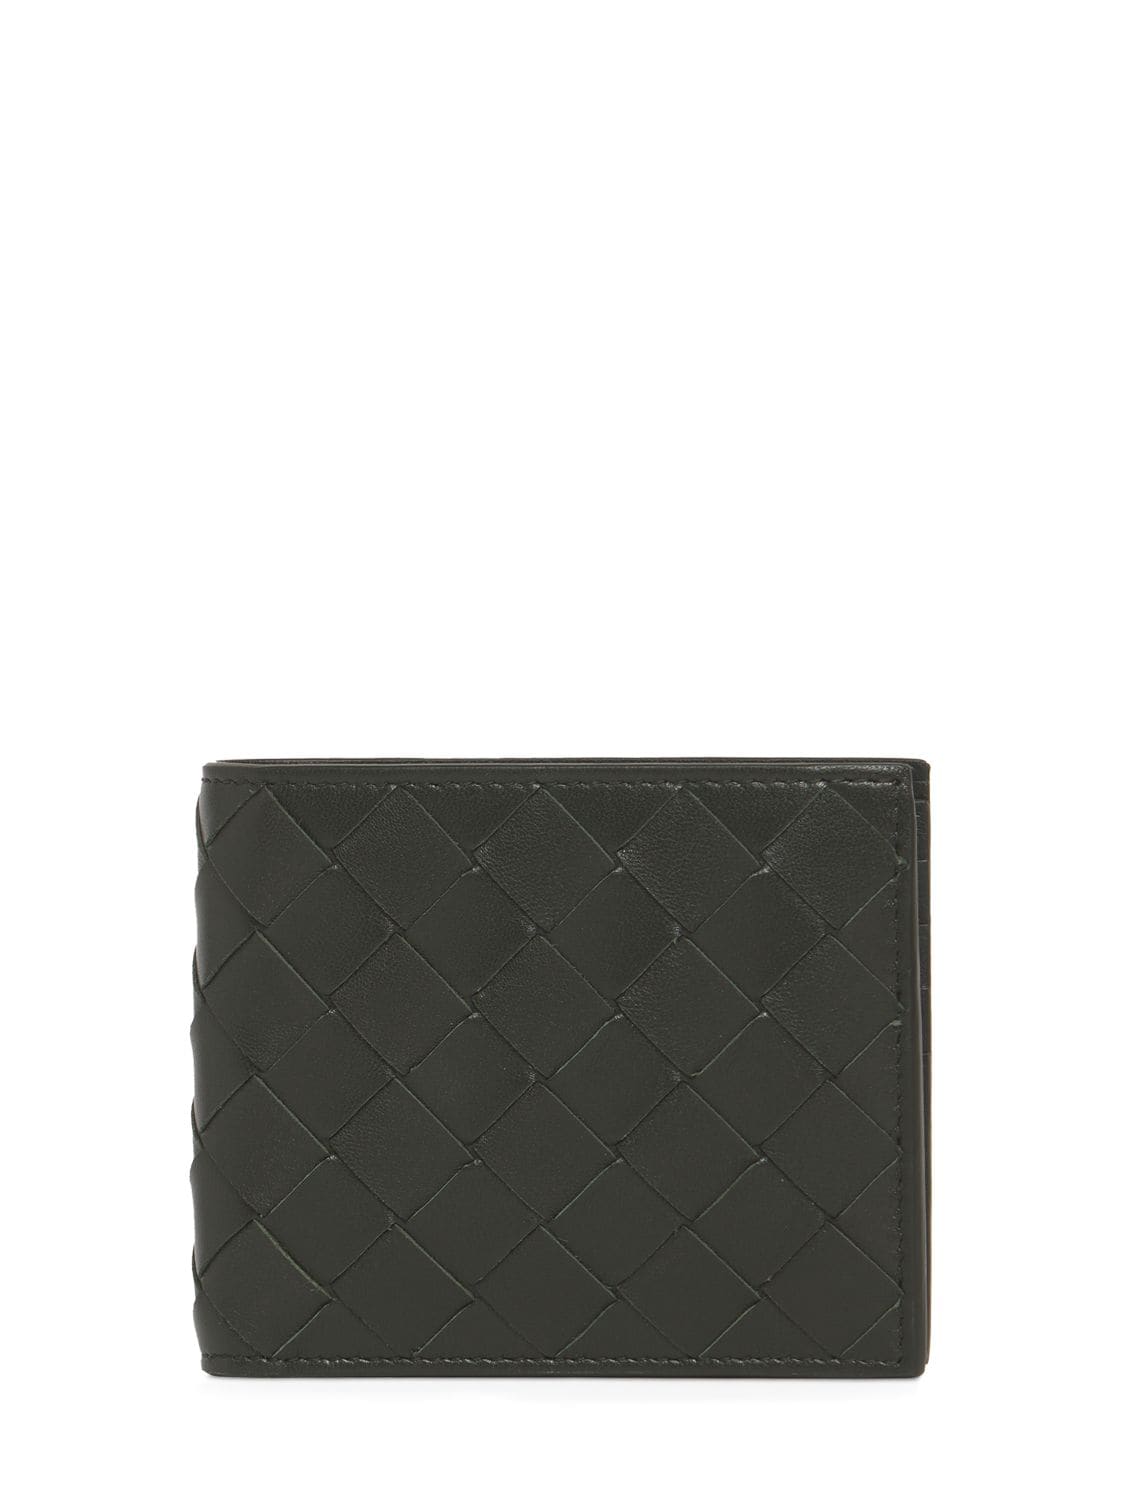 Bottega Veneta Intrecciato Leather Billfold Wallet In Dark Green